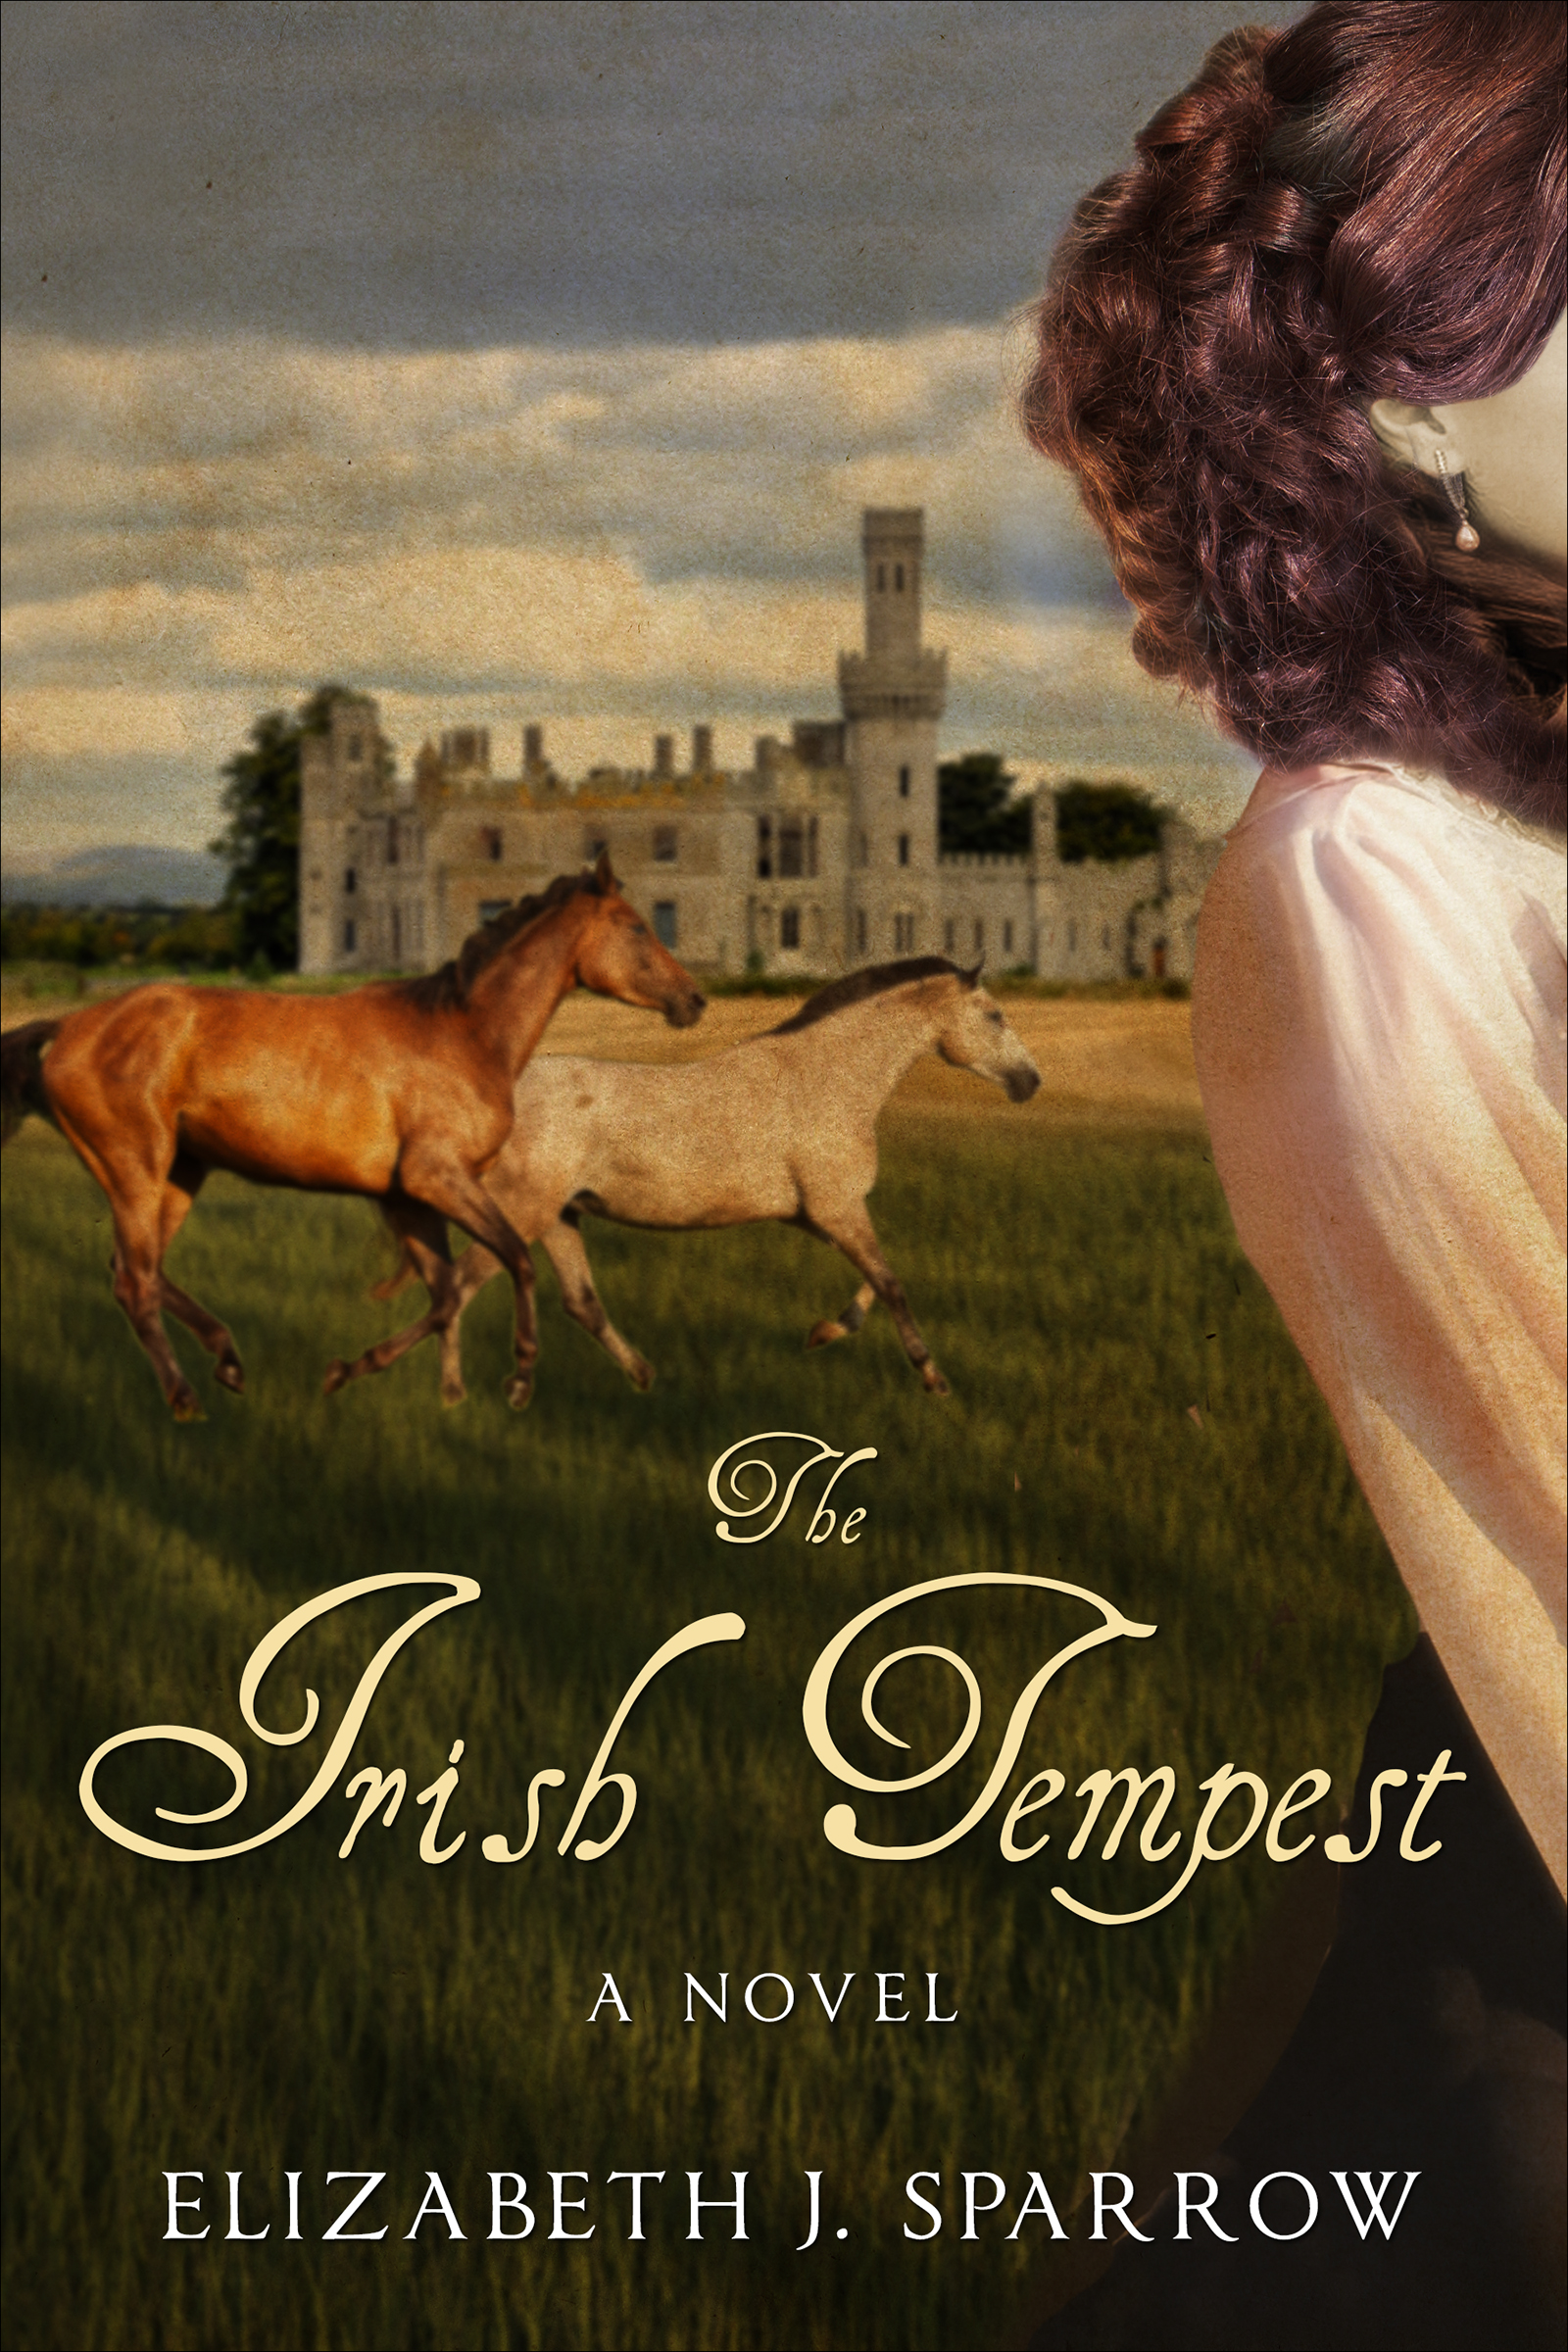 The Irish Tempest